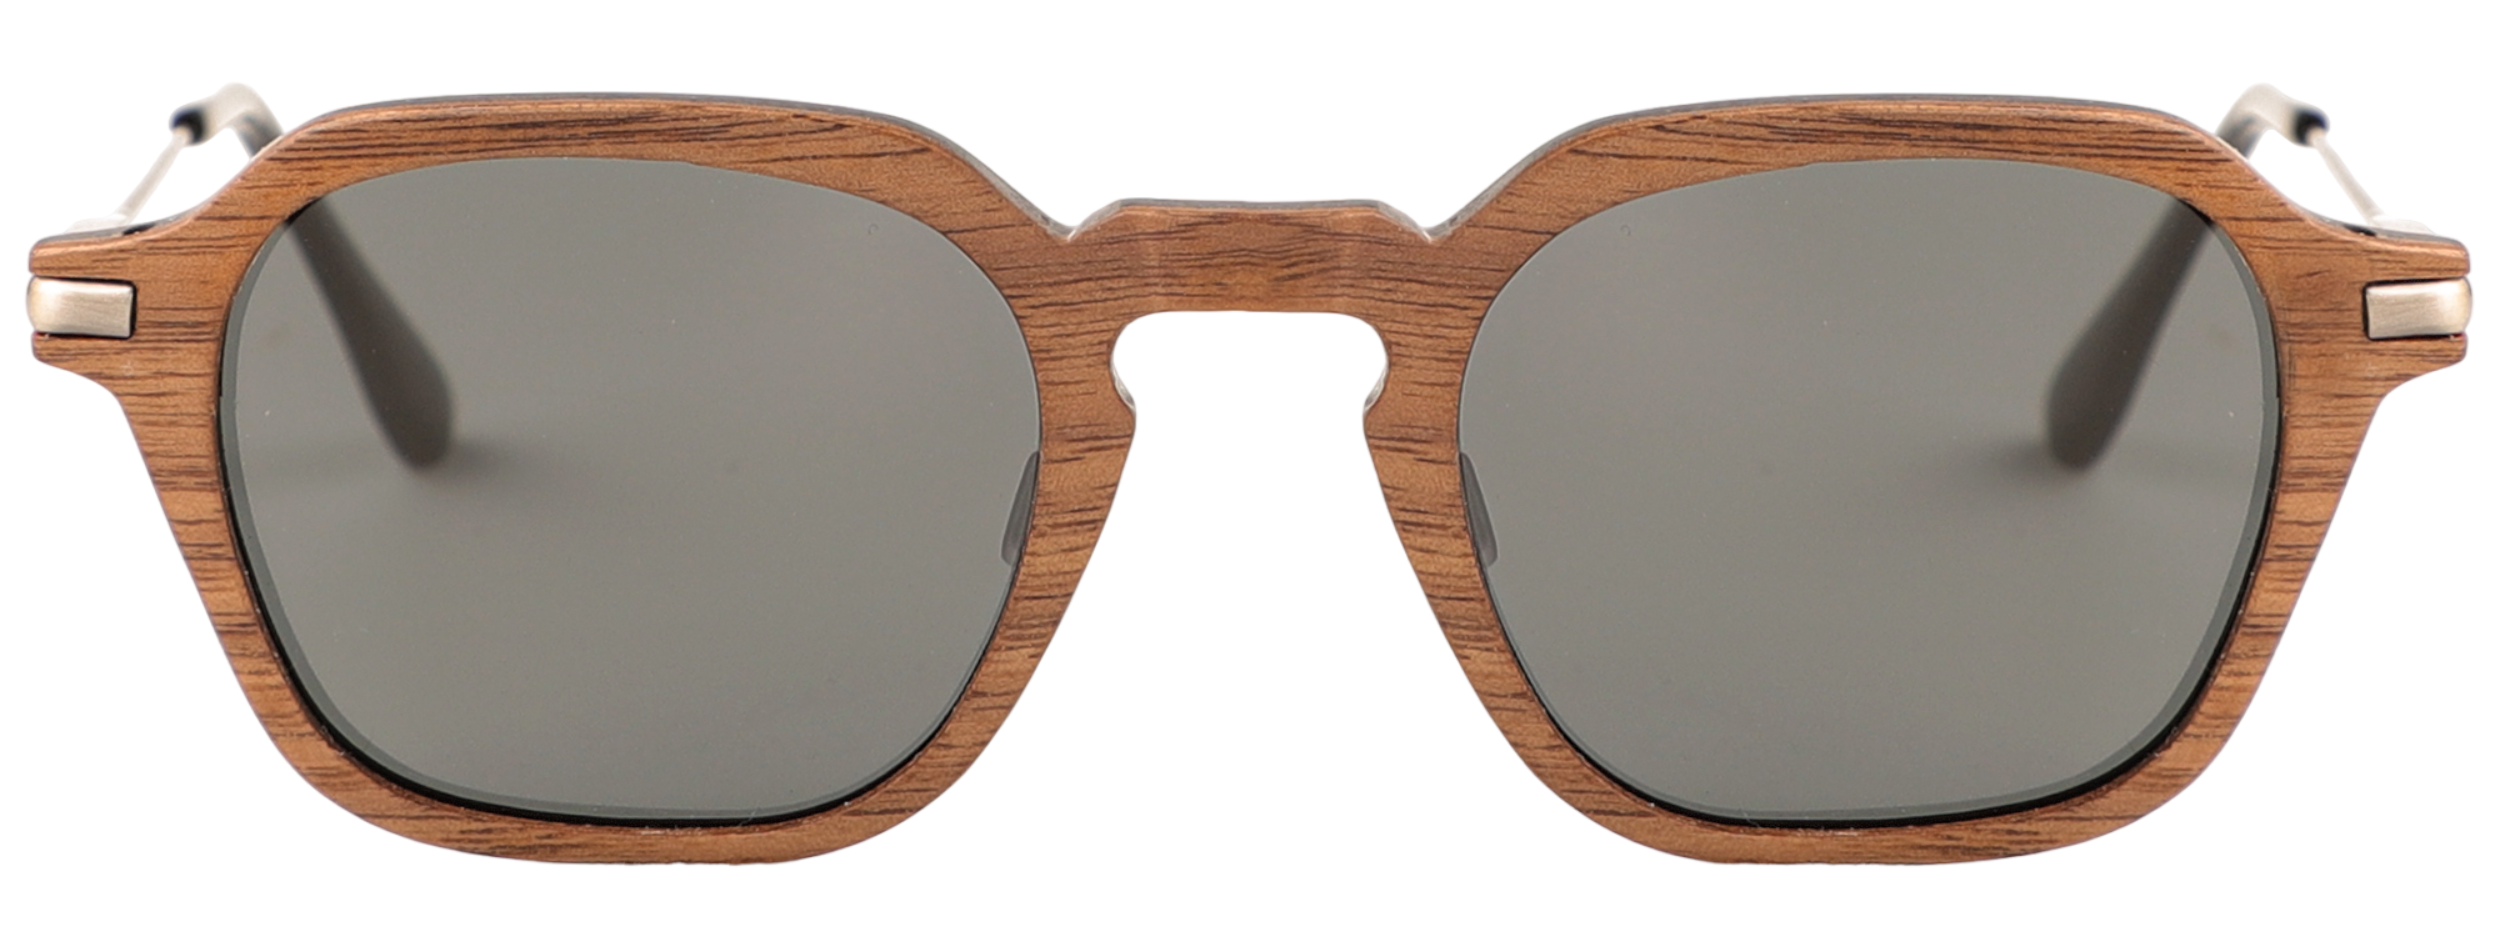 Bonhom Sunglasses (RX Compatible)